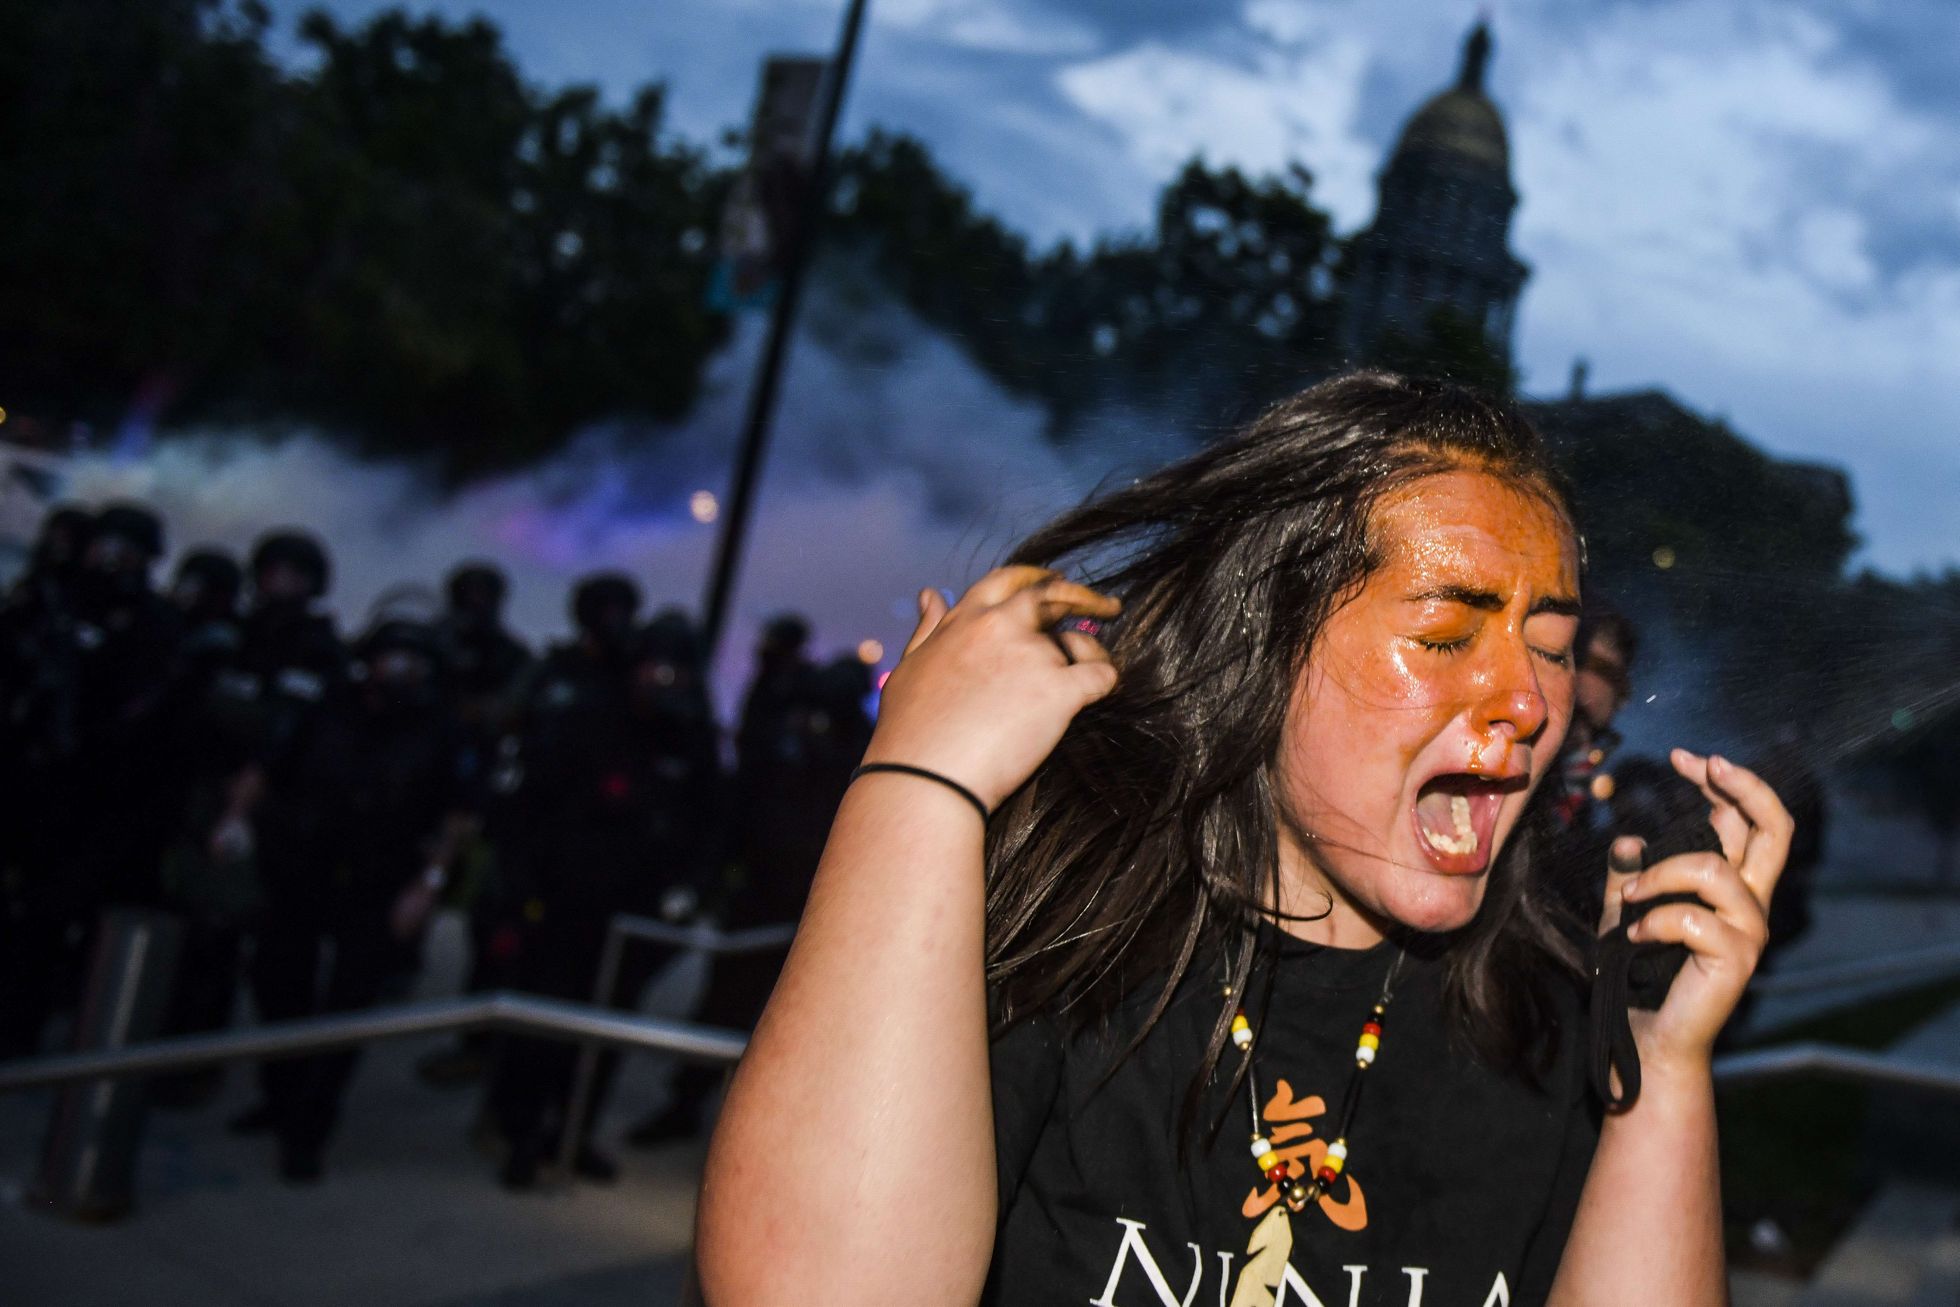 Politsei kasutab meeleavaldajate vastu pisargaasi ja kummikuule. Naine pildil on Denveri elanik, keda pritsiti meeleavalduste käigus pisargaasiga. 